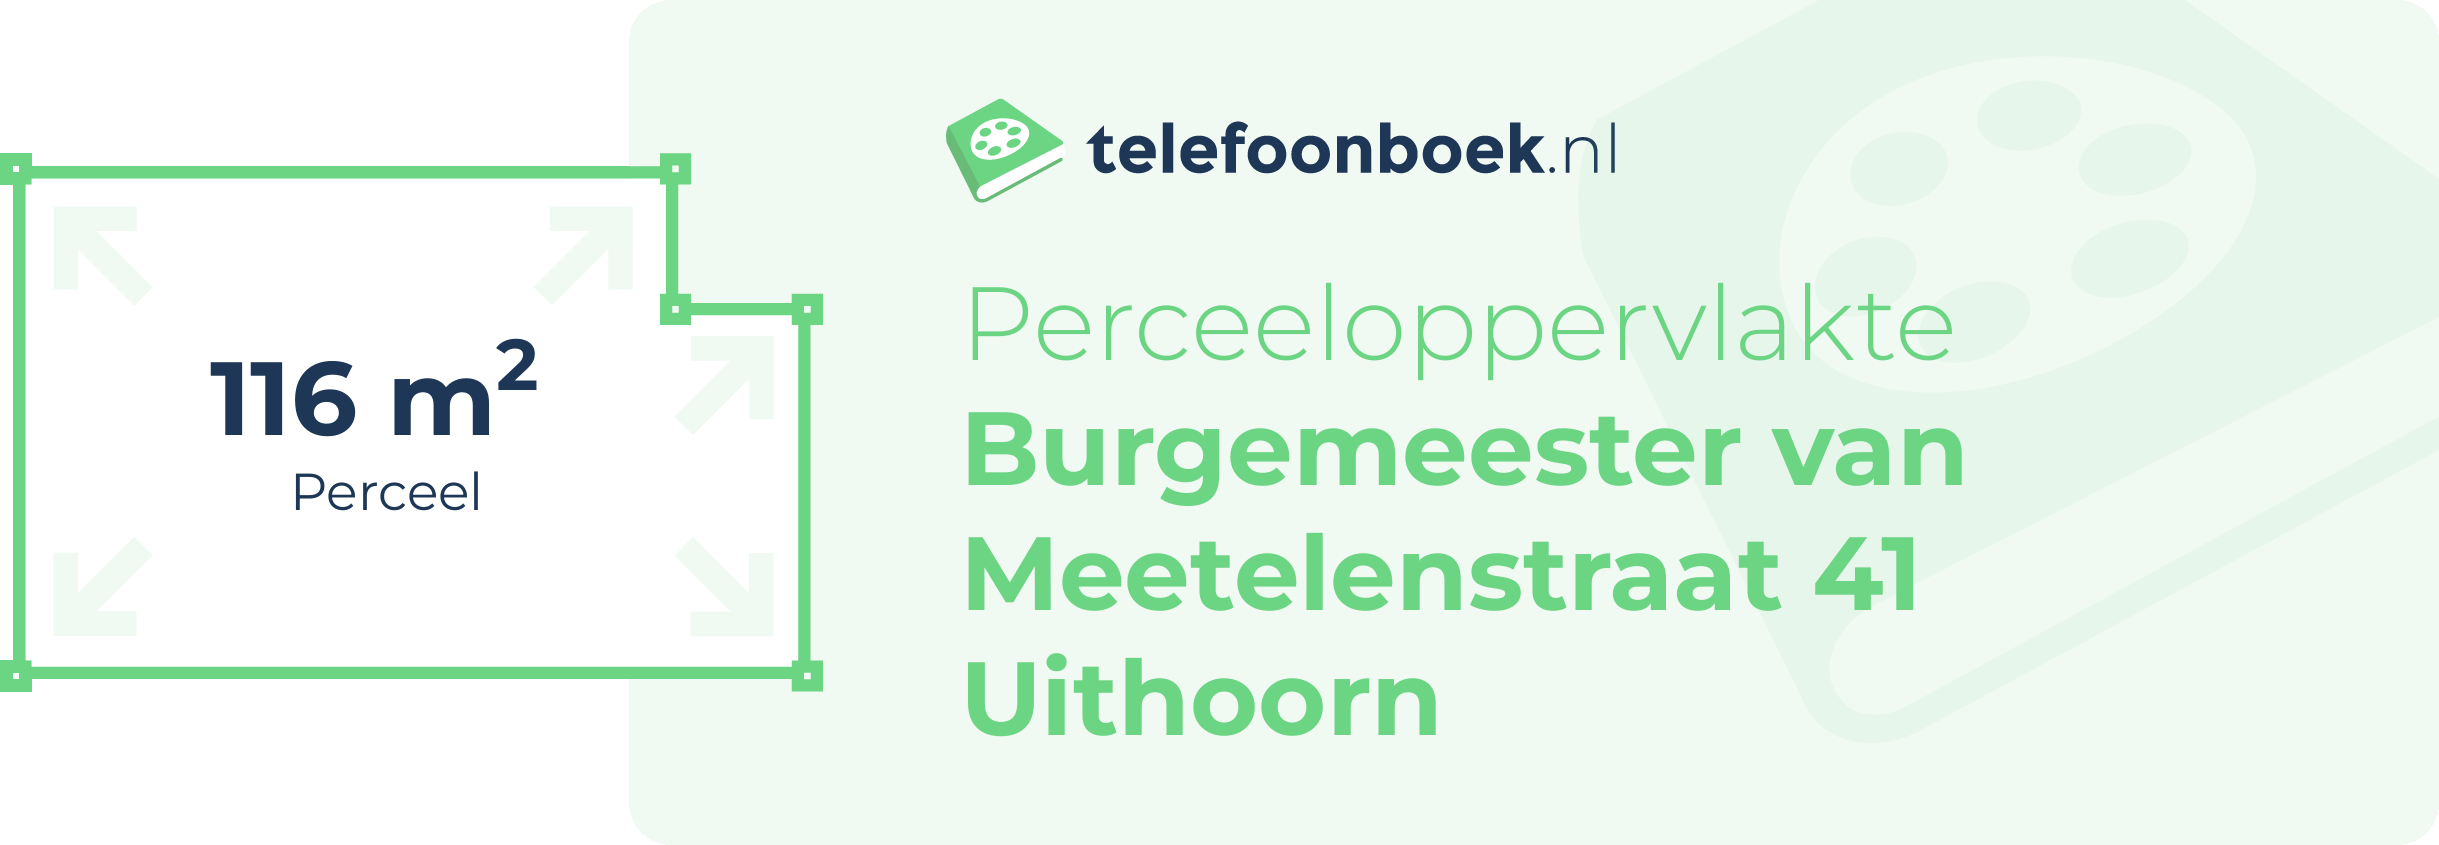 Perceeloppervlakte Burgemeester Van Meetelenstraat 41 Uithoorn